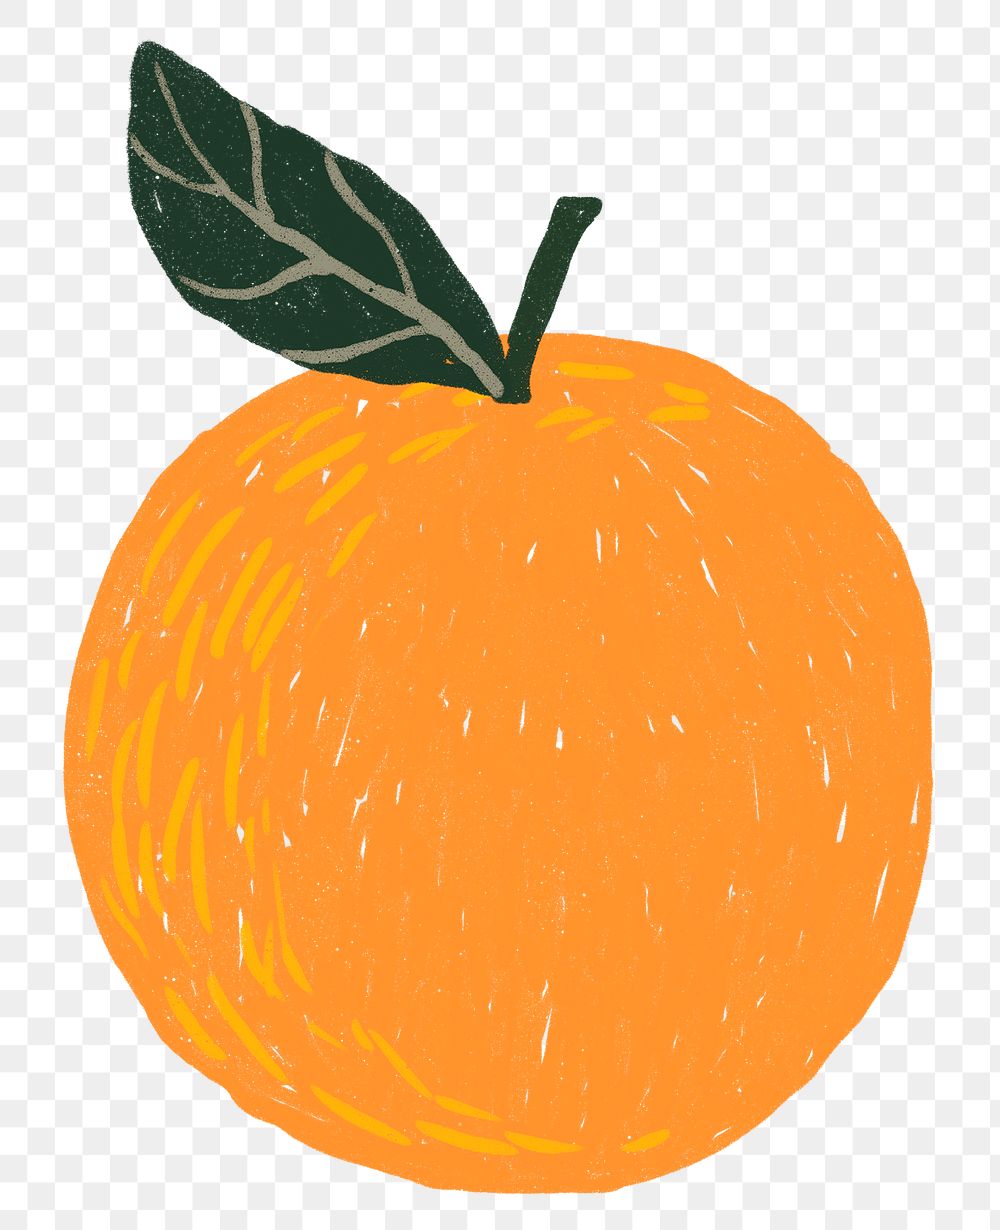 Orange PNG fruit doodle sticker